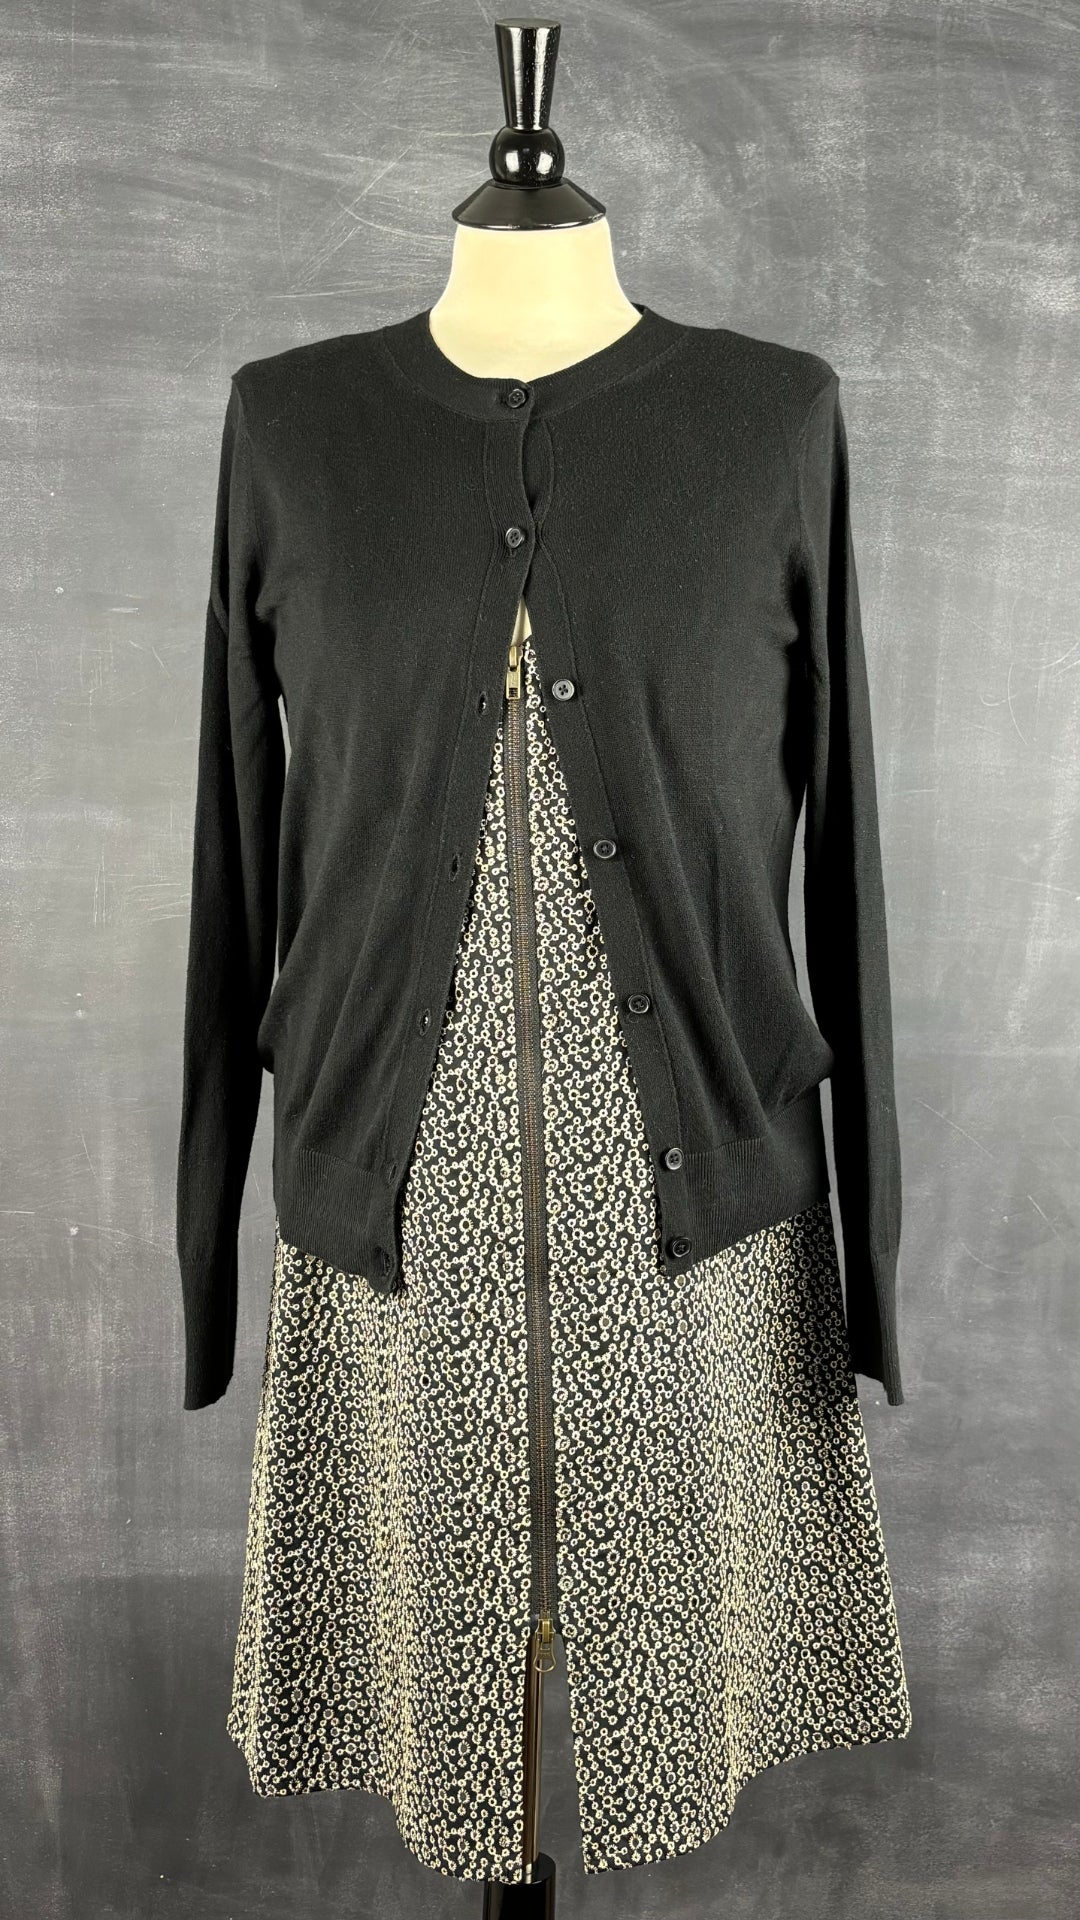 Robe en broderie anglaise Isabelle Elie Boutique, taille large. Vue de l'agencement avec le cardigan noir.